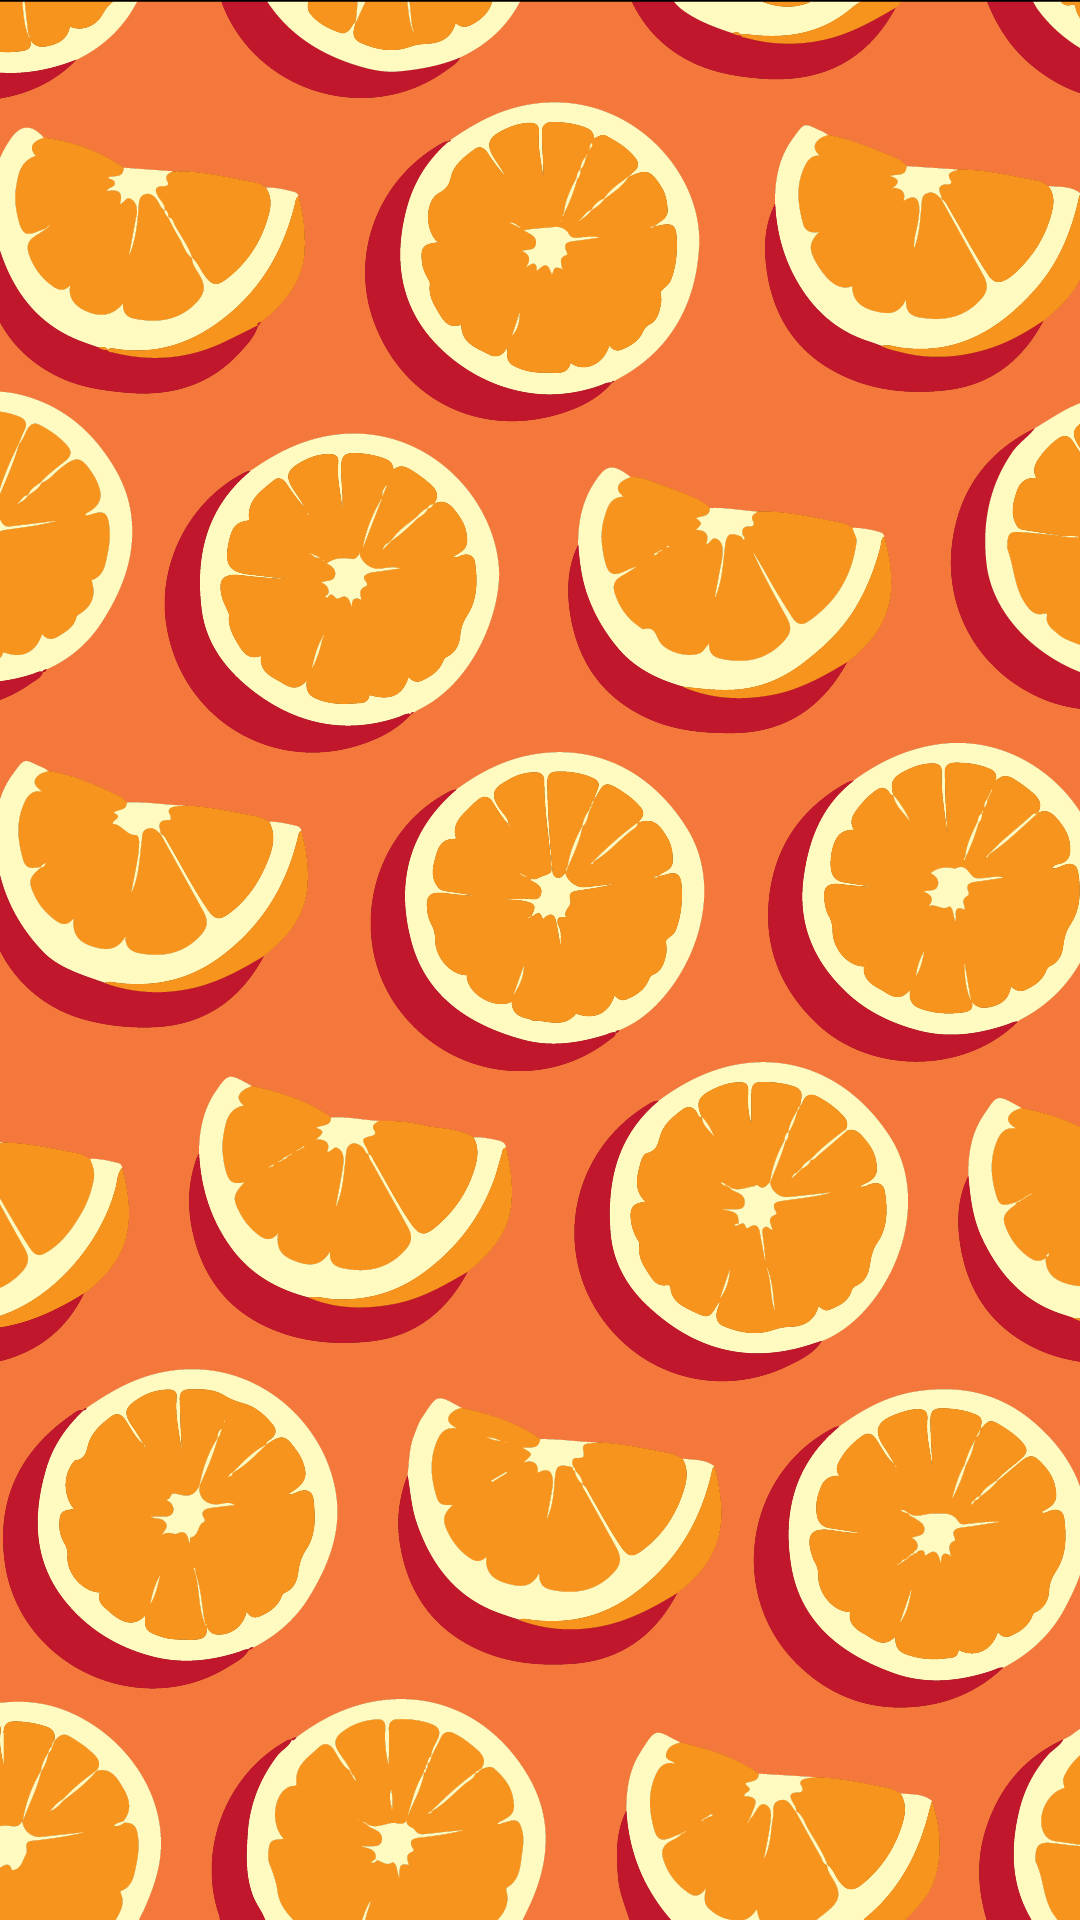 Hình nền Orange Phone Wallpaper Downloads với màu sắc tươi sáng và đầy năng lượng, giúp bạn thay đổi không gian màn hình điện thoại một cách dễ dàng, hiệu quả và đem lại niềm vui cho bạn.